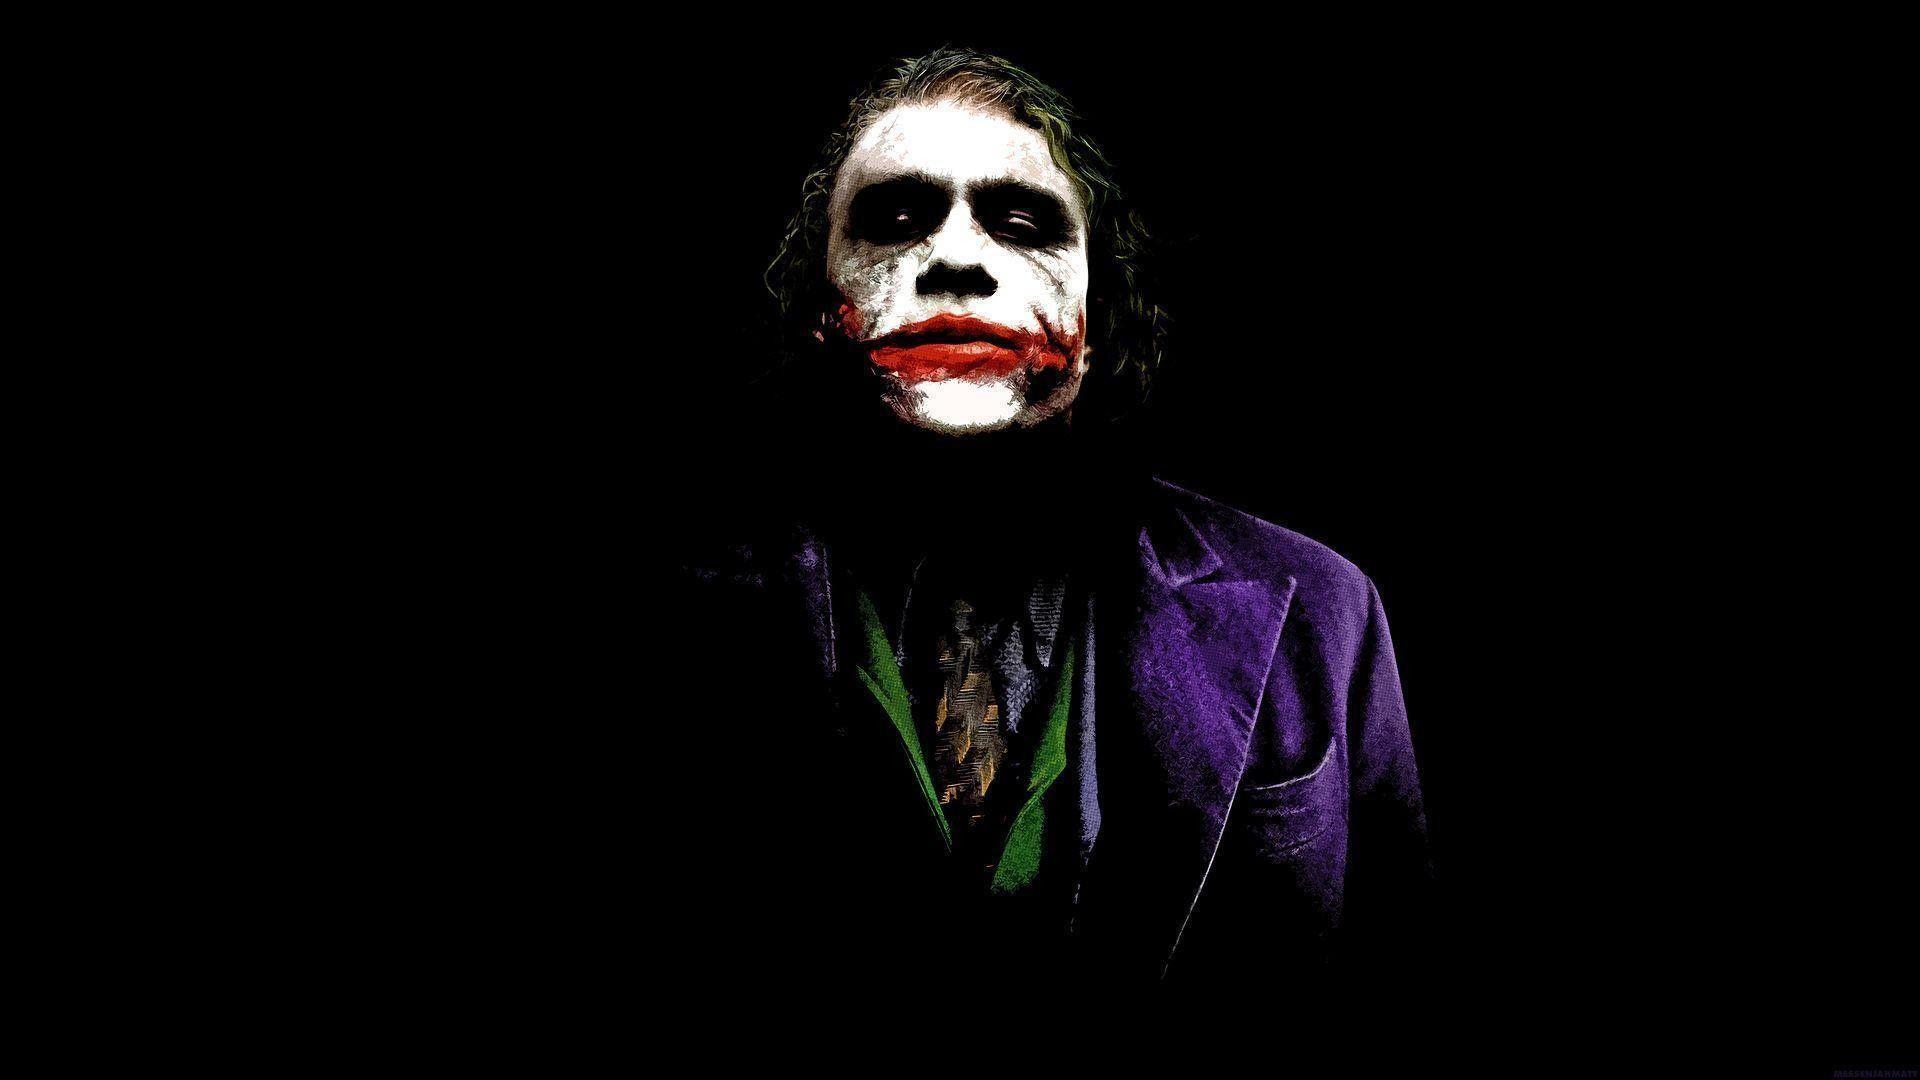 Joker Mask Wallpapers - Top Free Joker Mask Backgrounds - WallpaperAccess